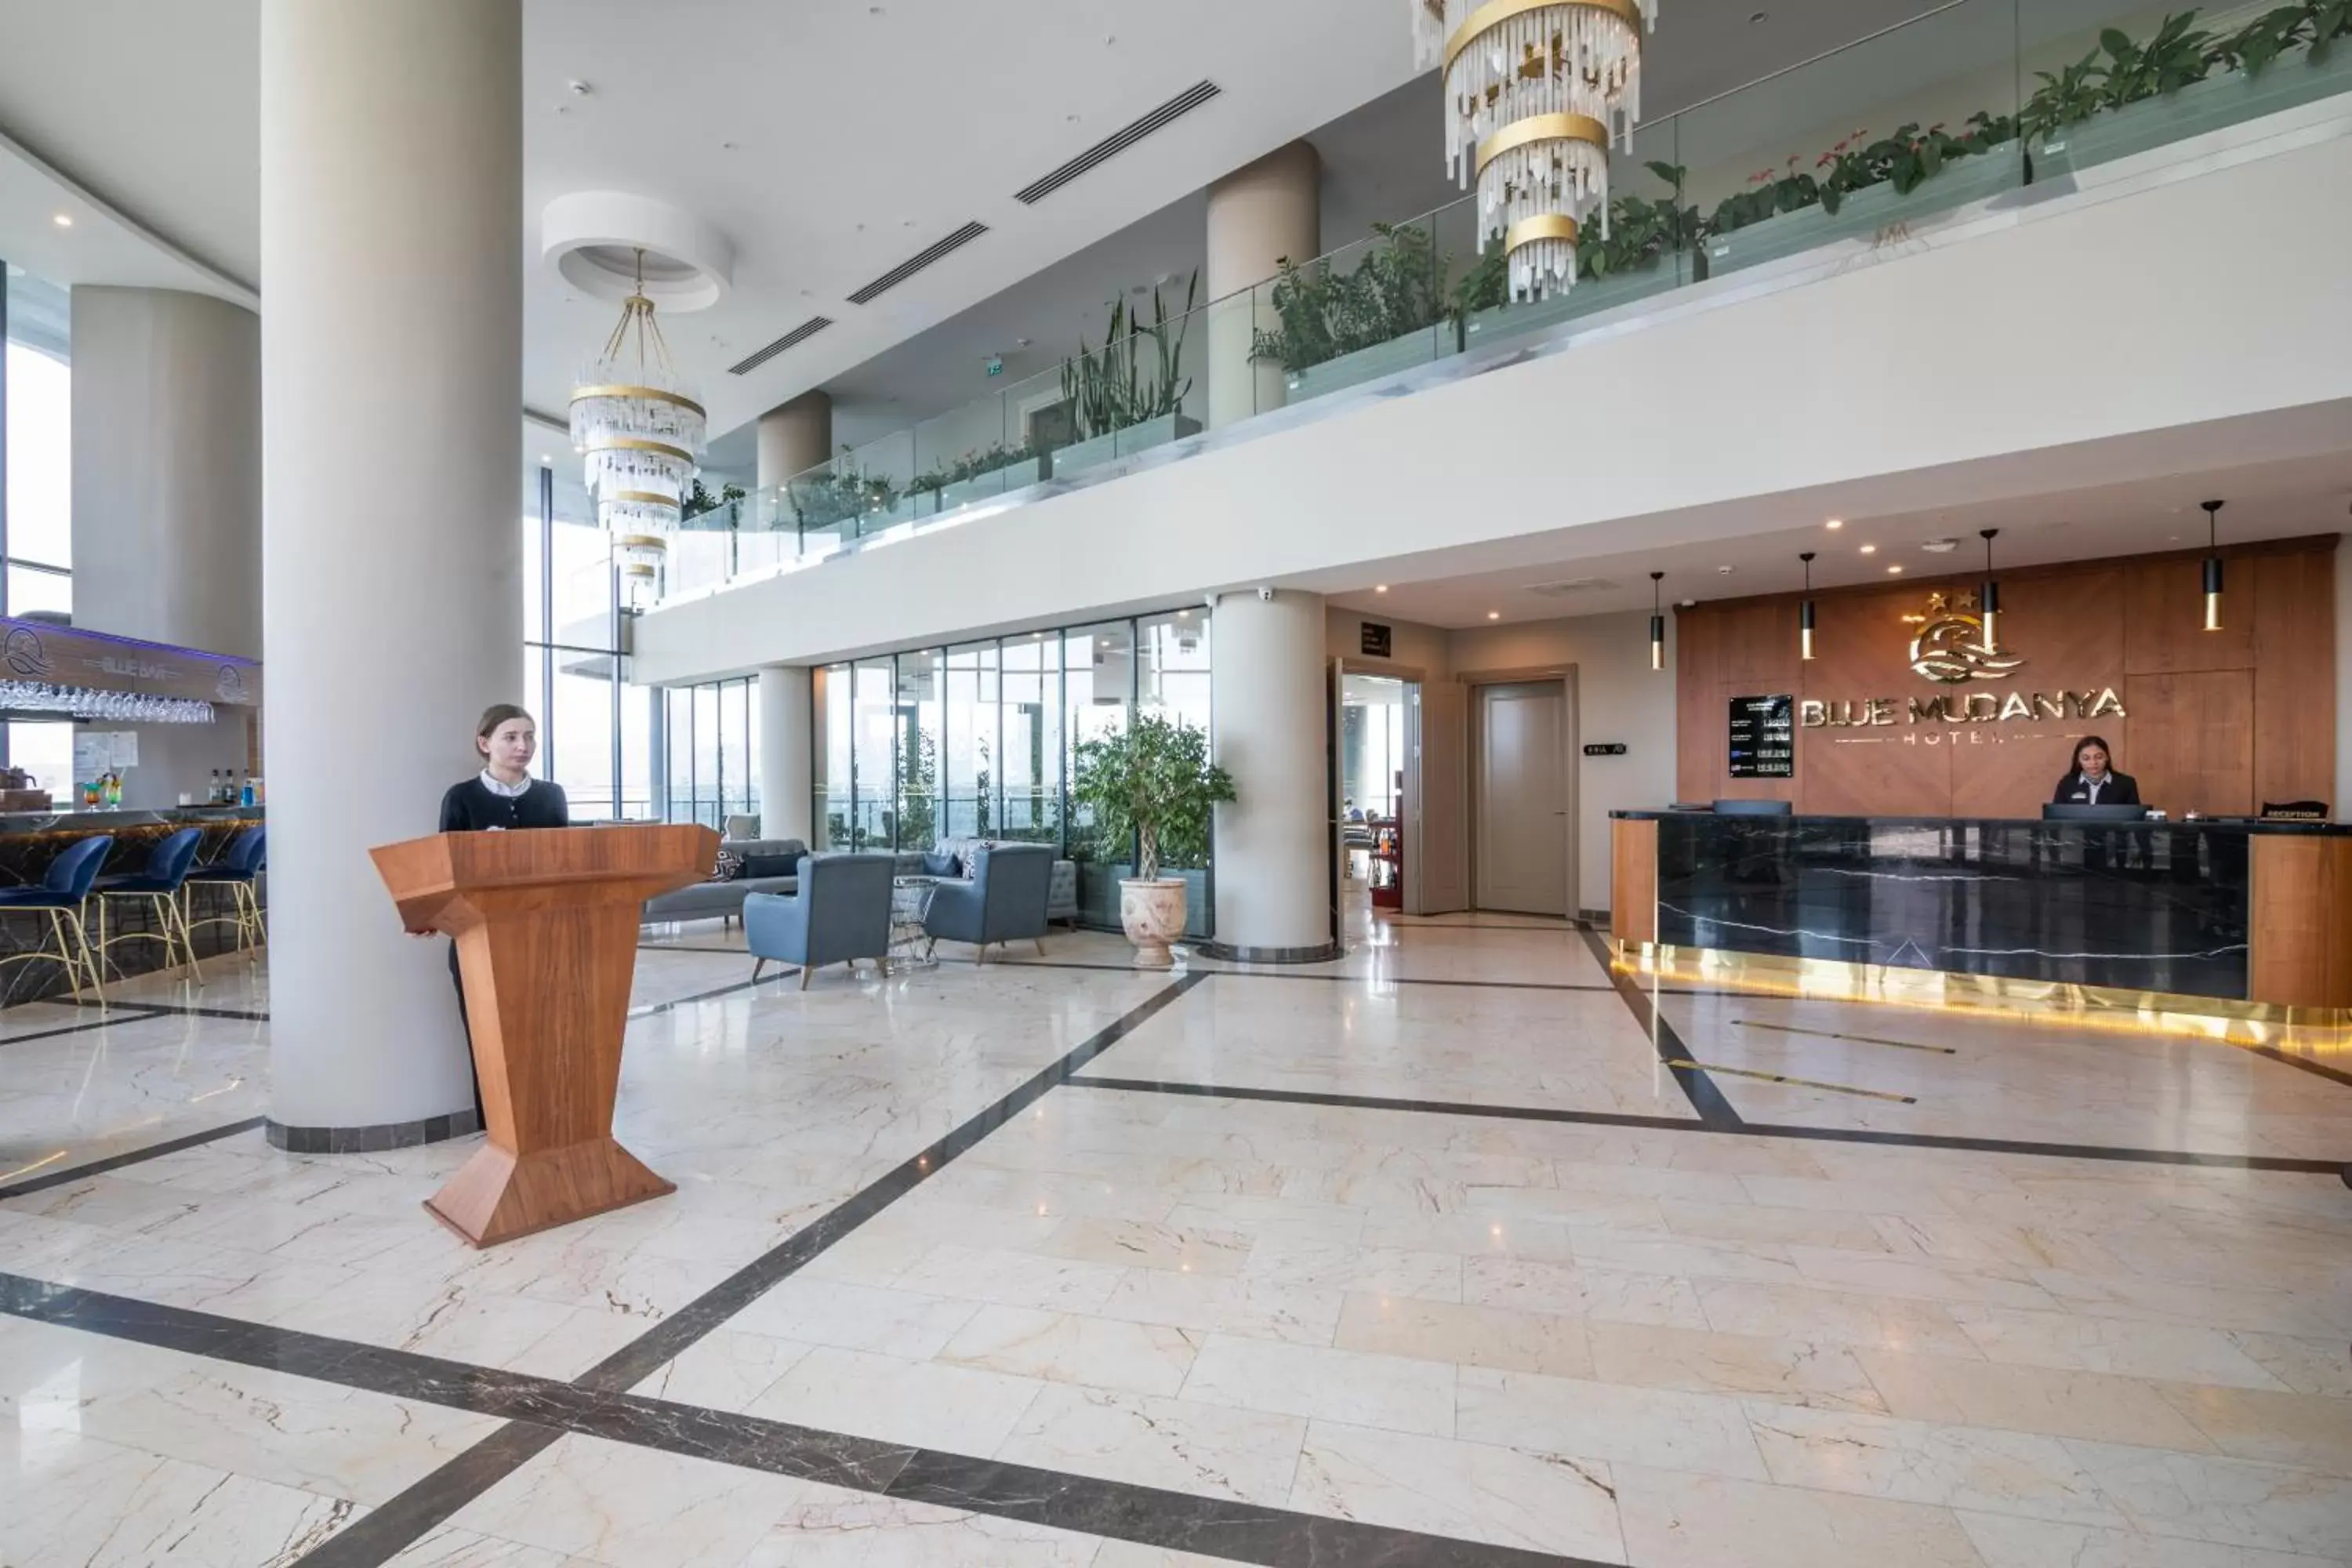 Lobby or reception, Lobby/Reception in BLUE MUDANYA HOTEL